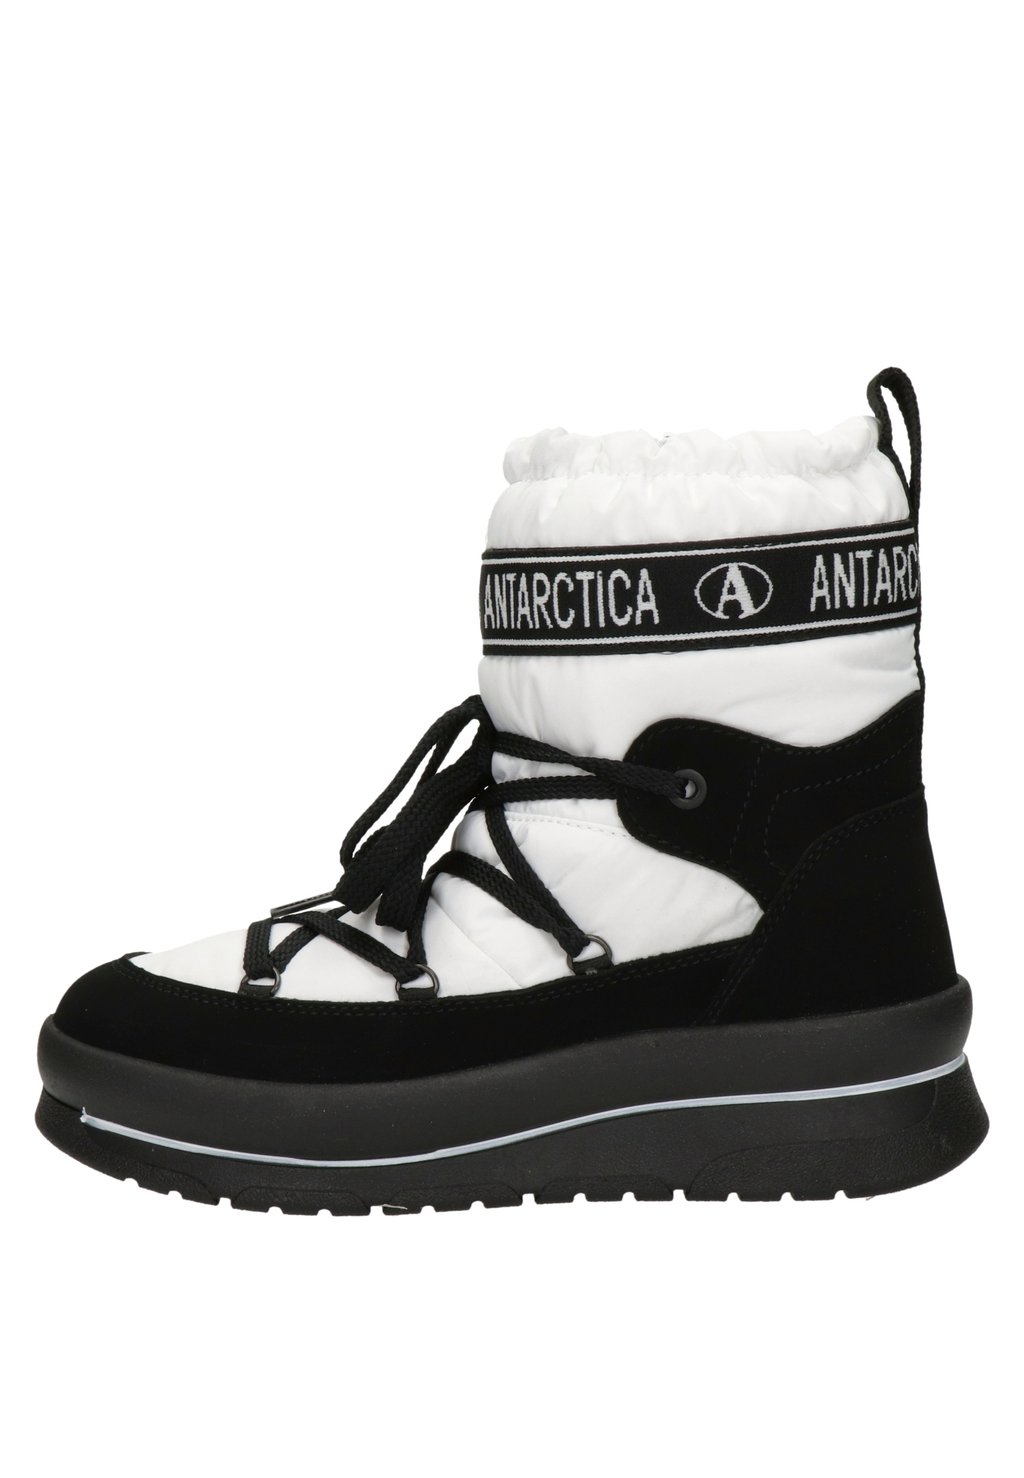 Зимние сапоги Antarctica Boots, белый keegan claire antarctica